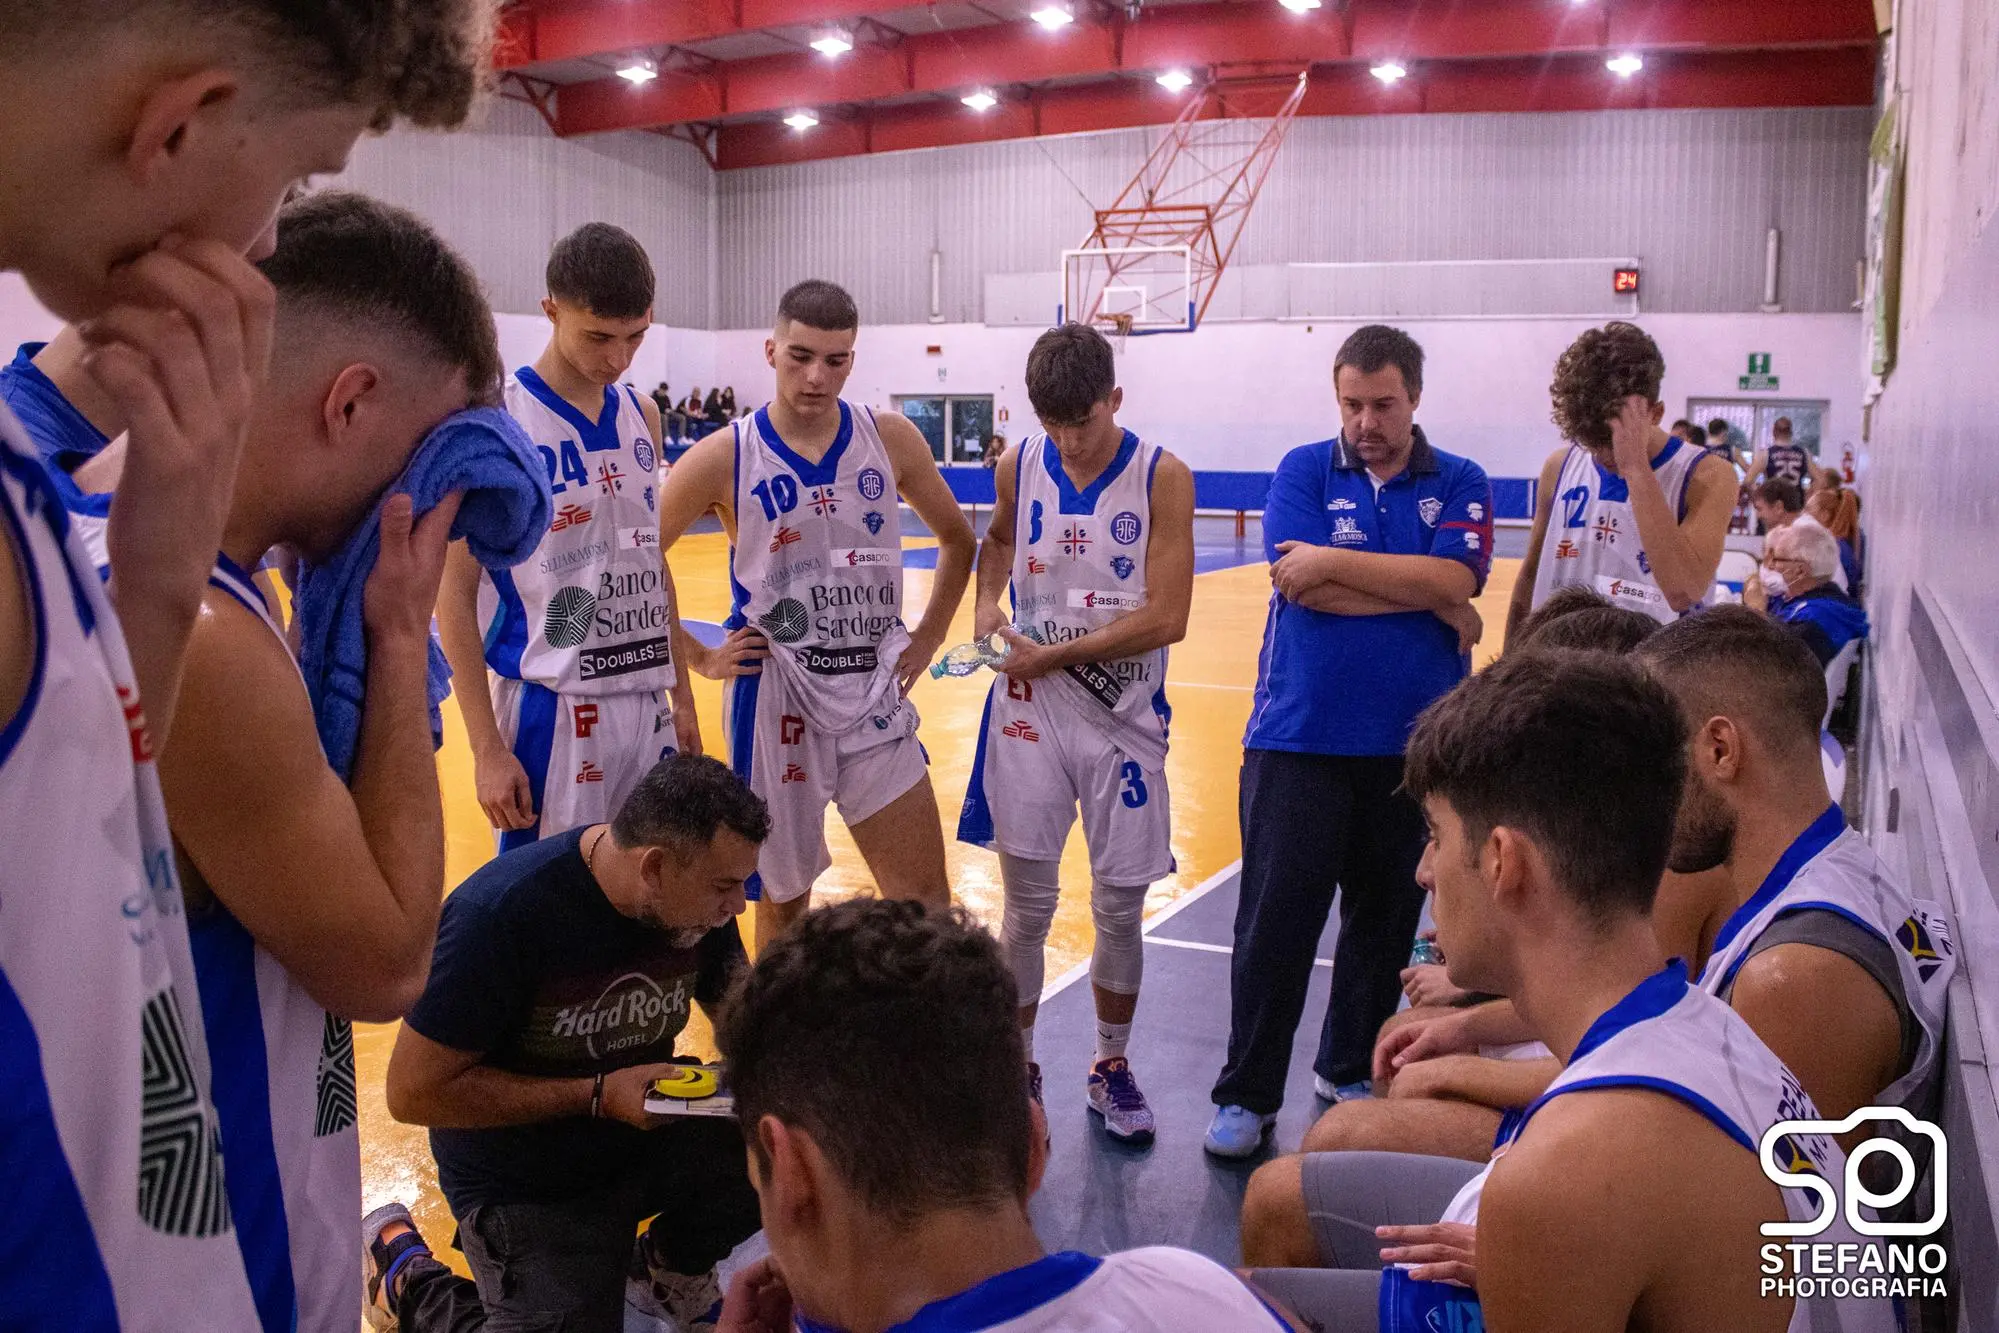 Coach Mura nel corso di un time out con i suoi ragazzi della Dinamo Academy Alghero (foto di Stefano Photografia)